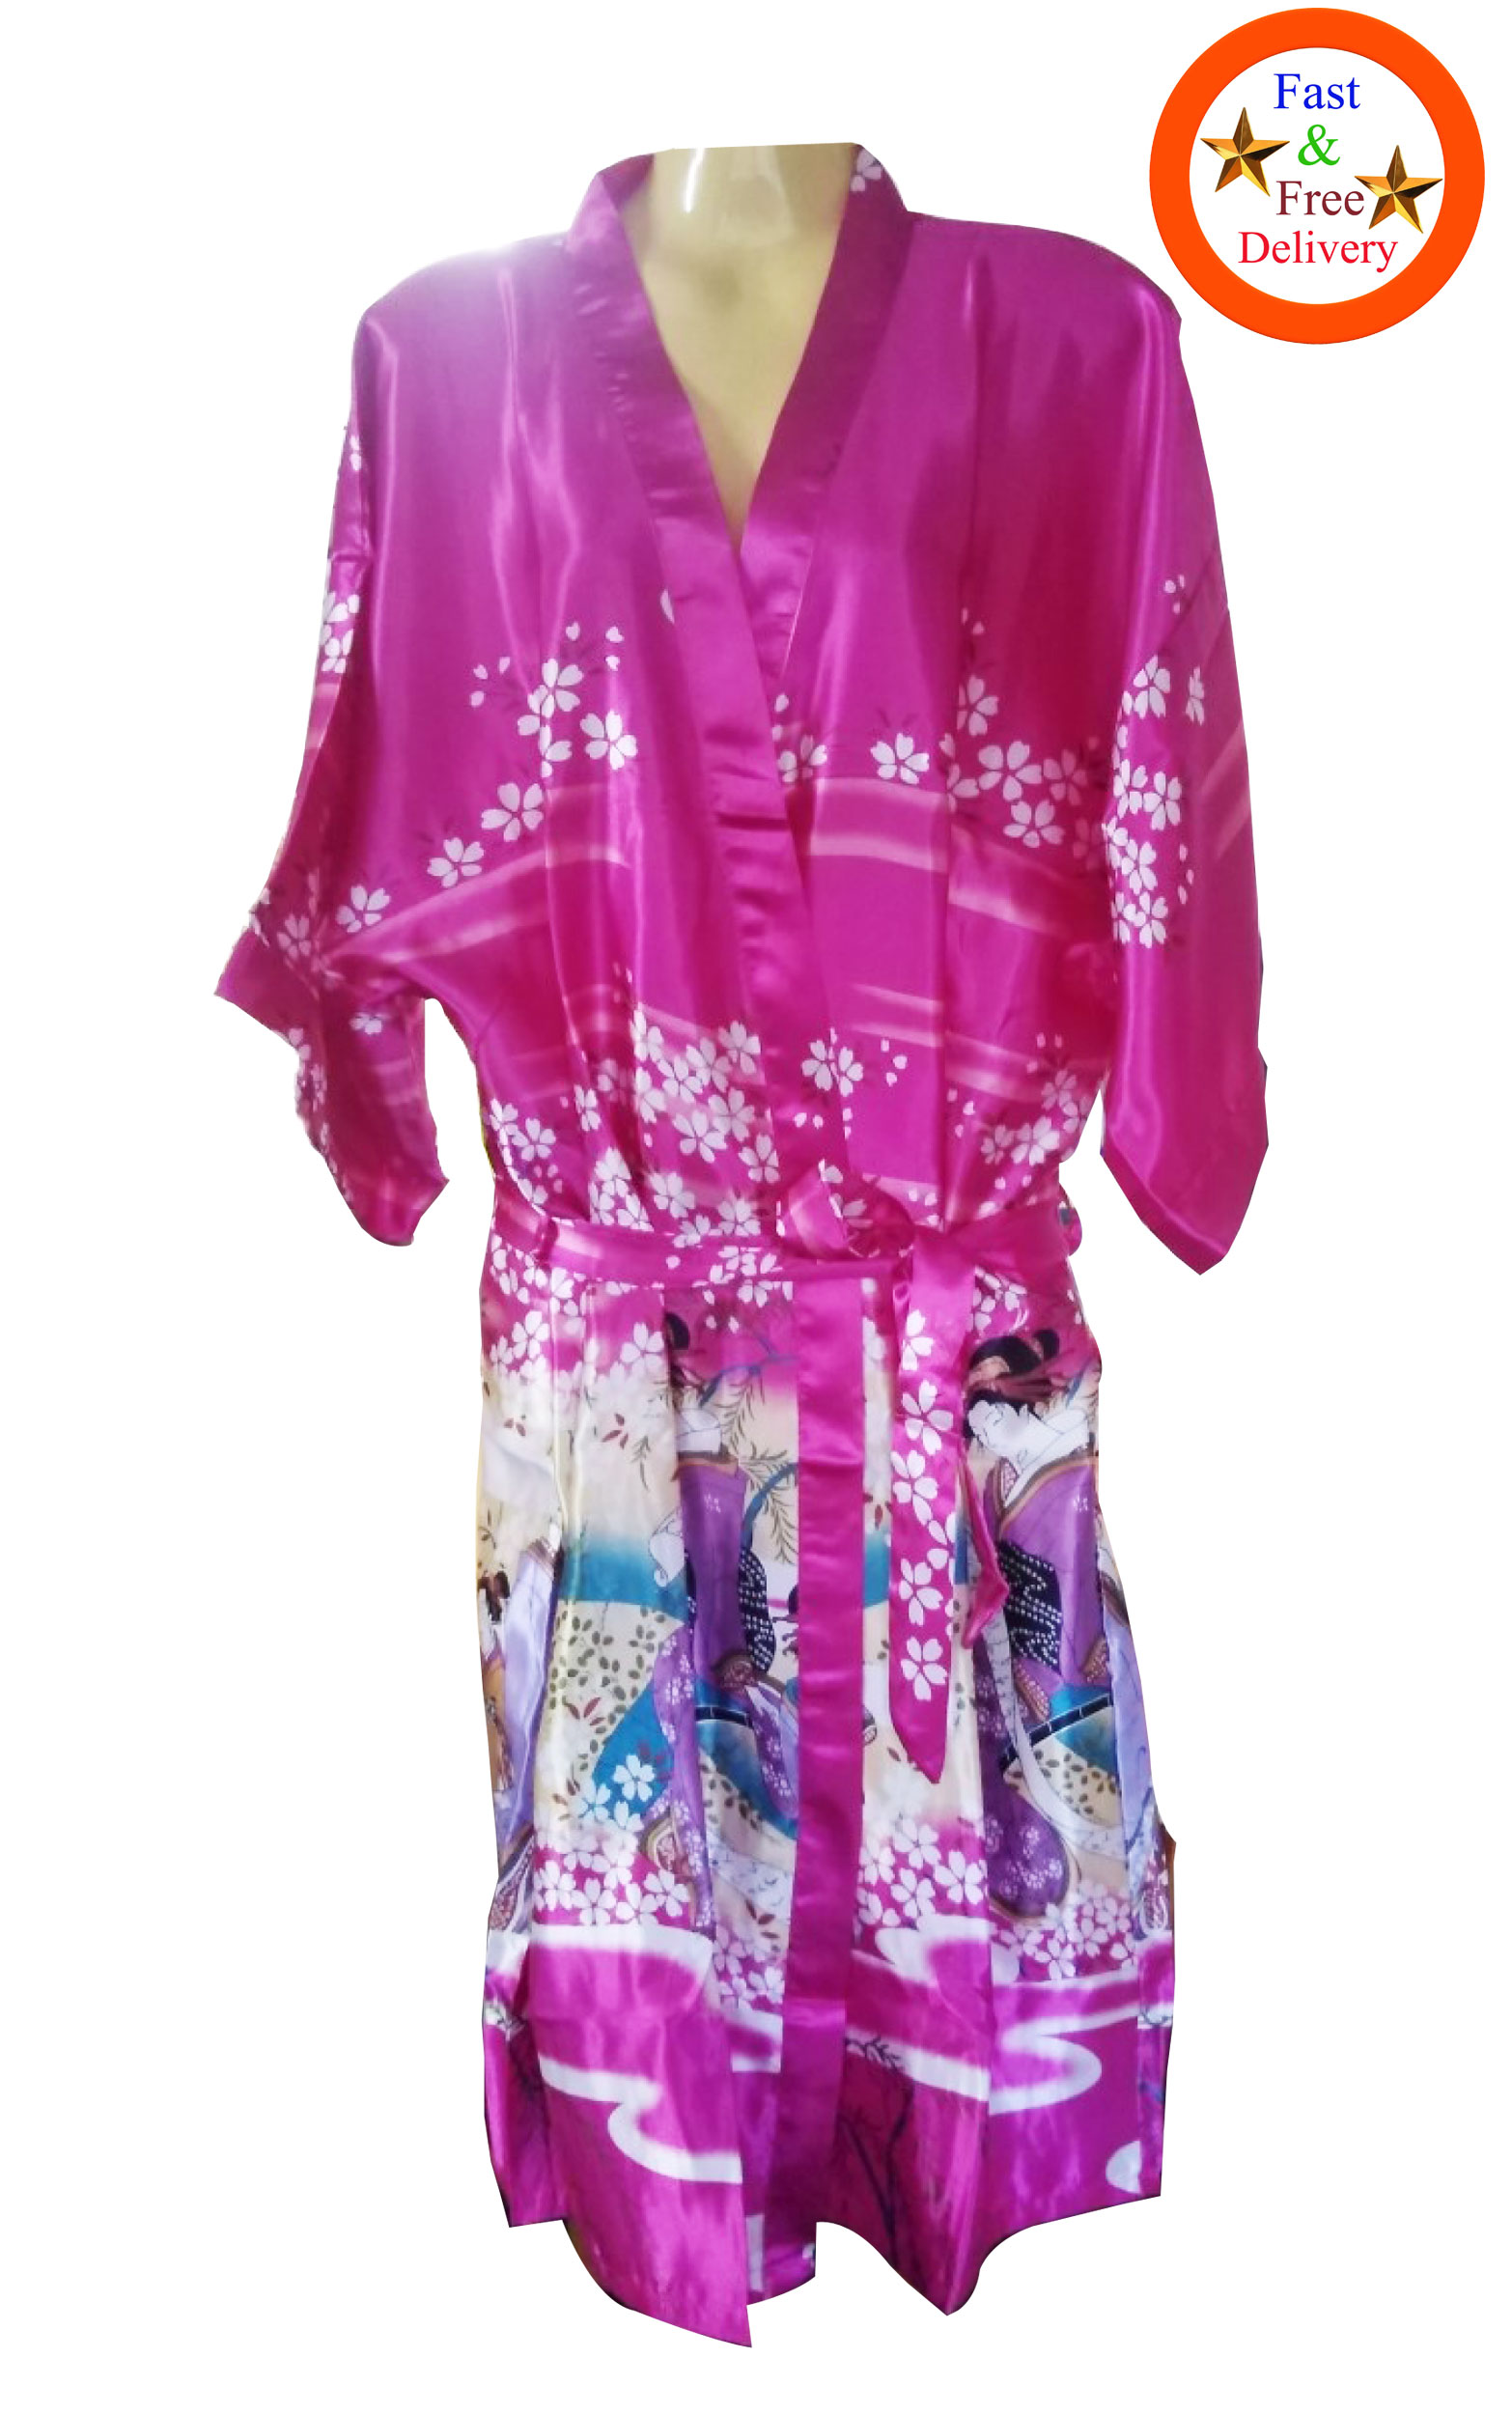 เสื้อคลุมสไตล์ กิโมโน ผ้า Stain ใส่นุ่มเย็นสบาย เกอิชา (ผู้หญิงญี่ปุ่น) เหมาะกับใส่เล่นอยู่บ้าน ใส่นอน เดินชายหาด ริมสระน้ำ